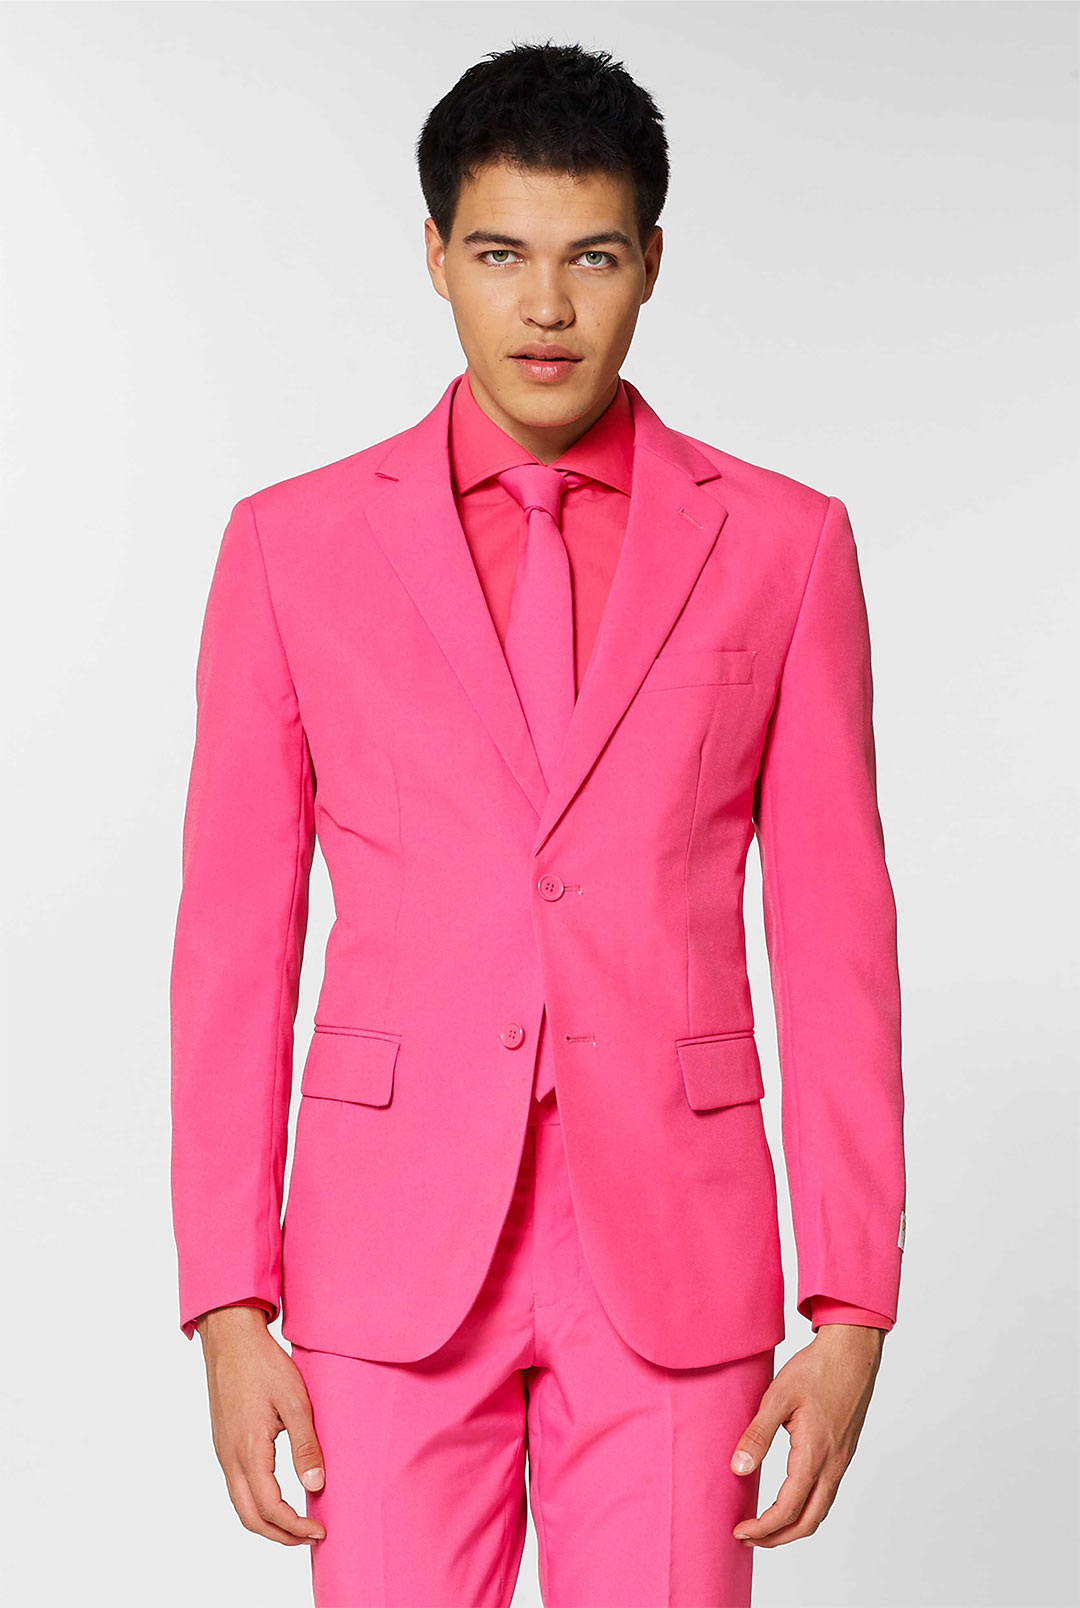 mens-pink-suit  Pink suit men, Mens dress outfits, Fashion suits for men